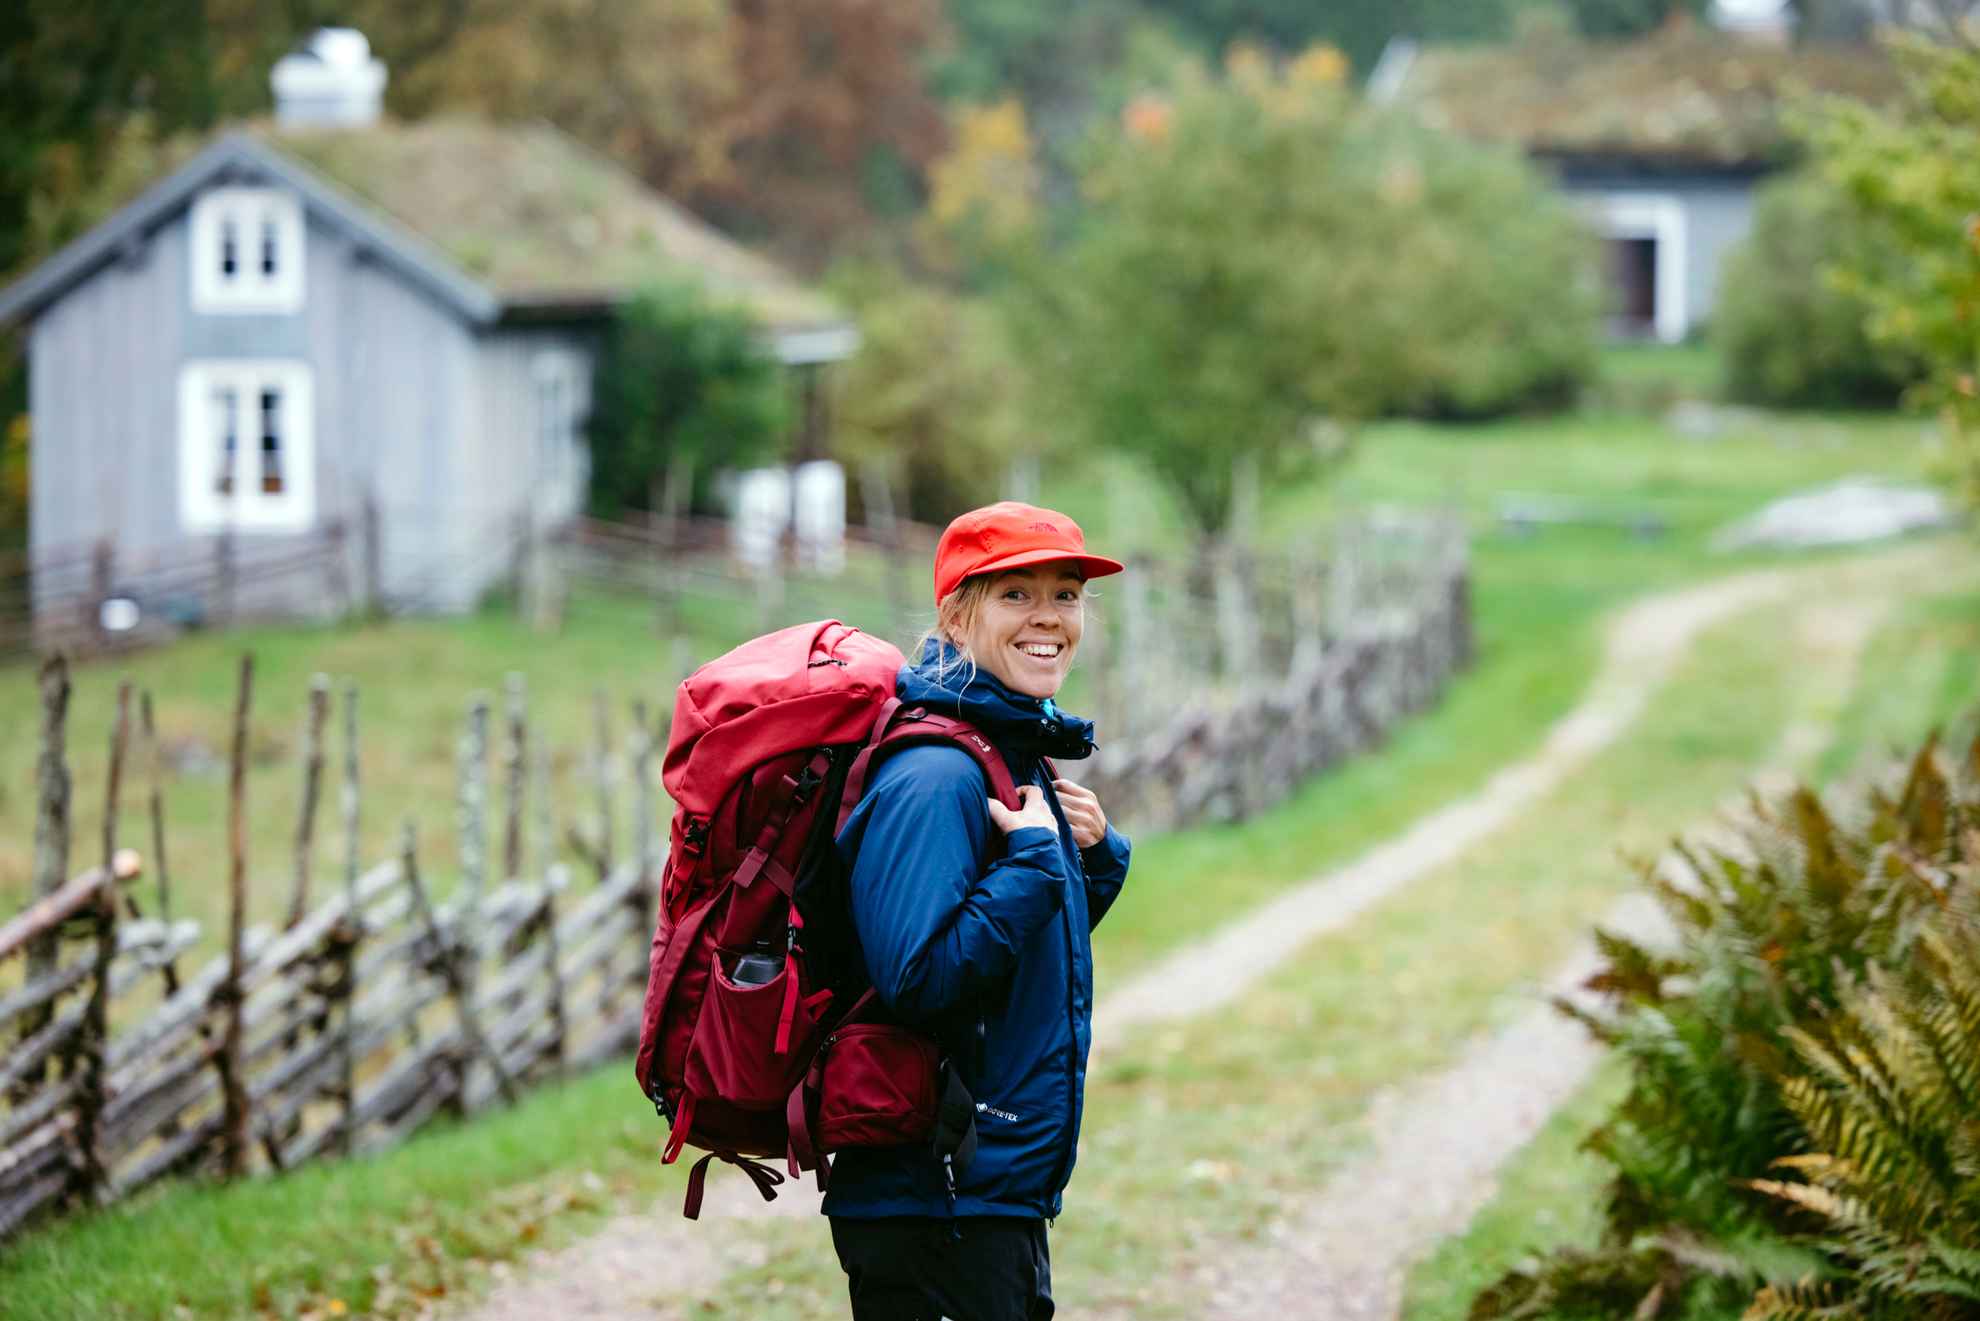 Une femme portant des vêtements de randonnée et un sac à dos regarde la caméra depuis un sentier de randonnée. En arrière-plan, on aperçoit une ferme en bois.